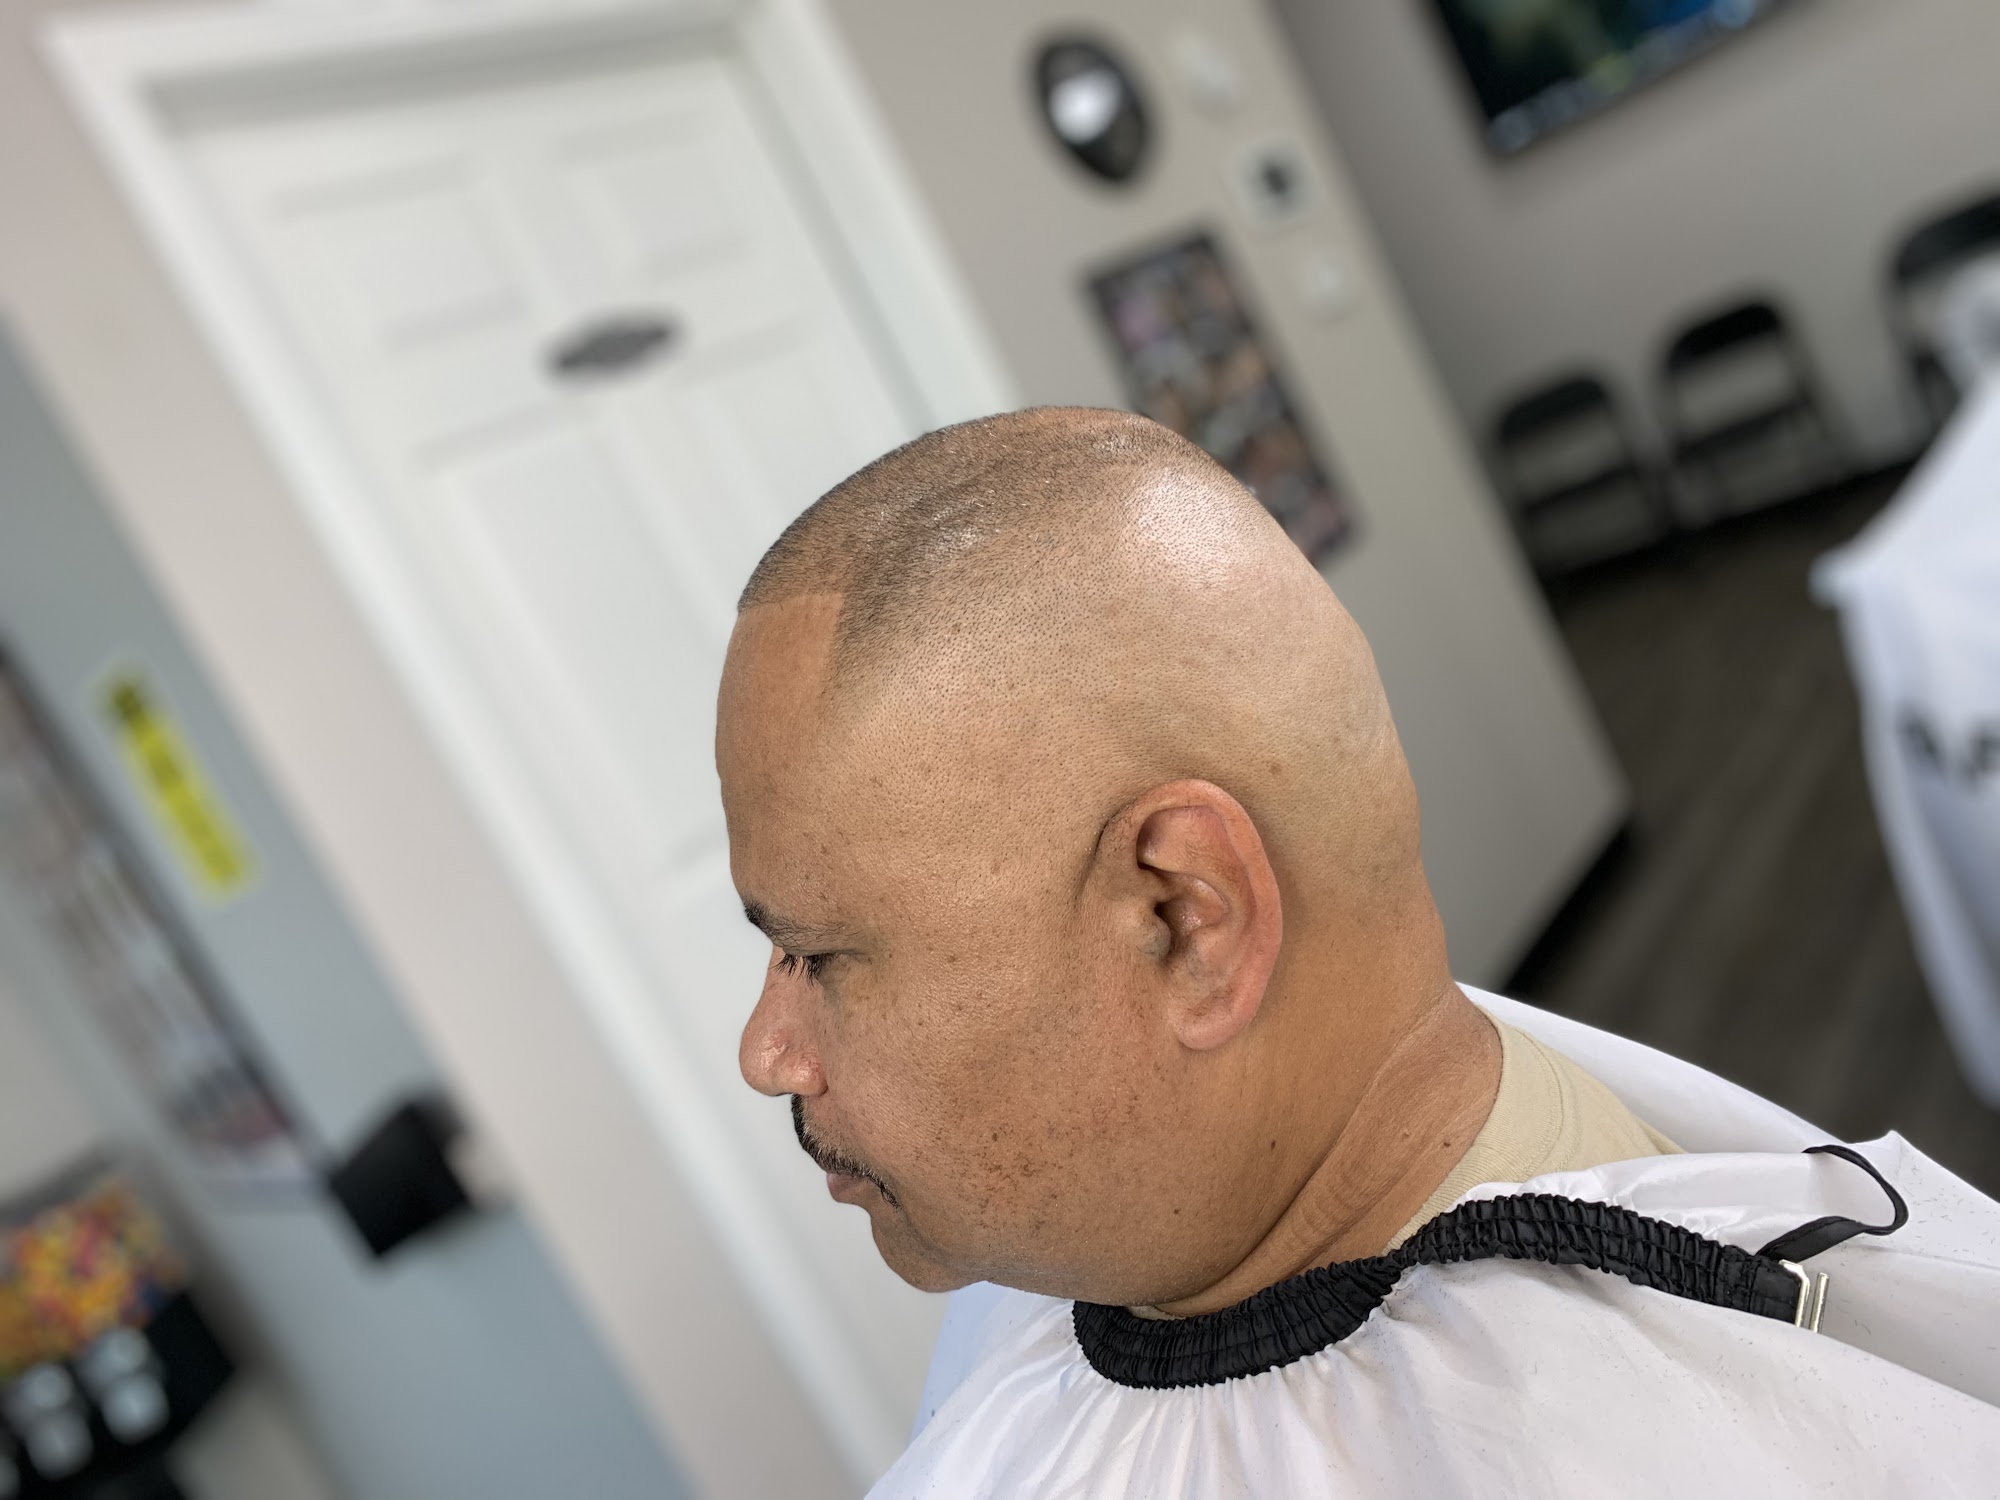 Narrow Cuts Barbershop/Salon